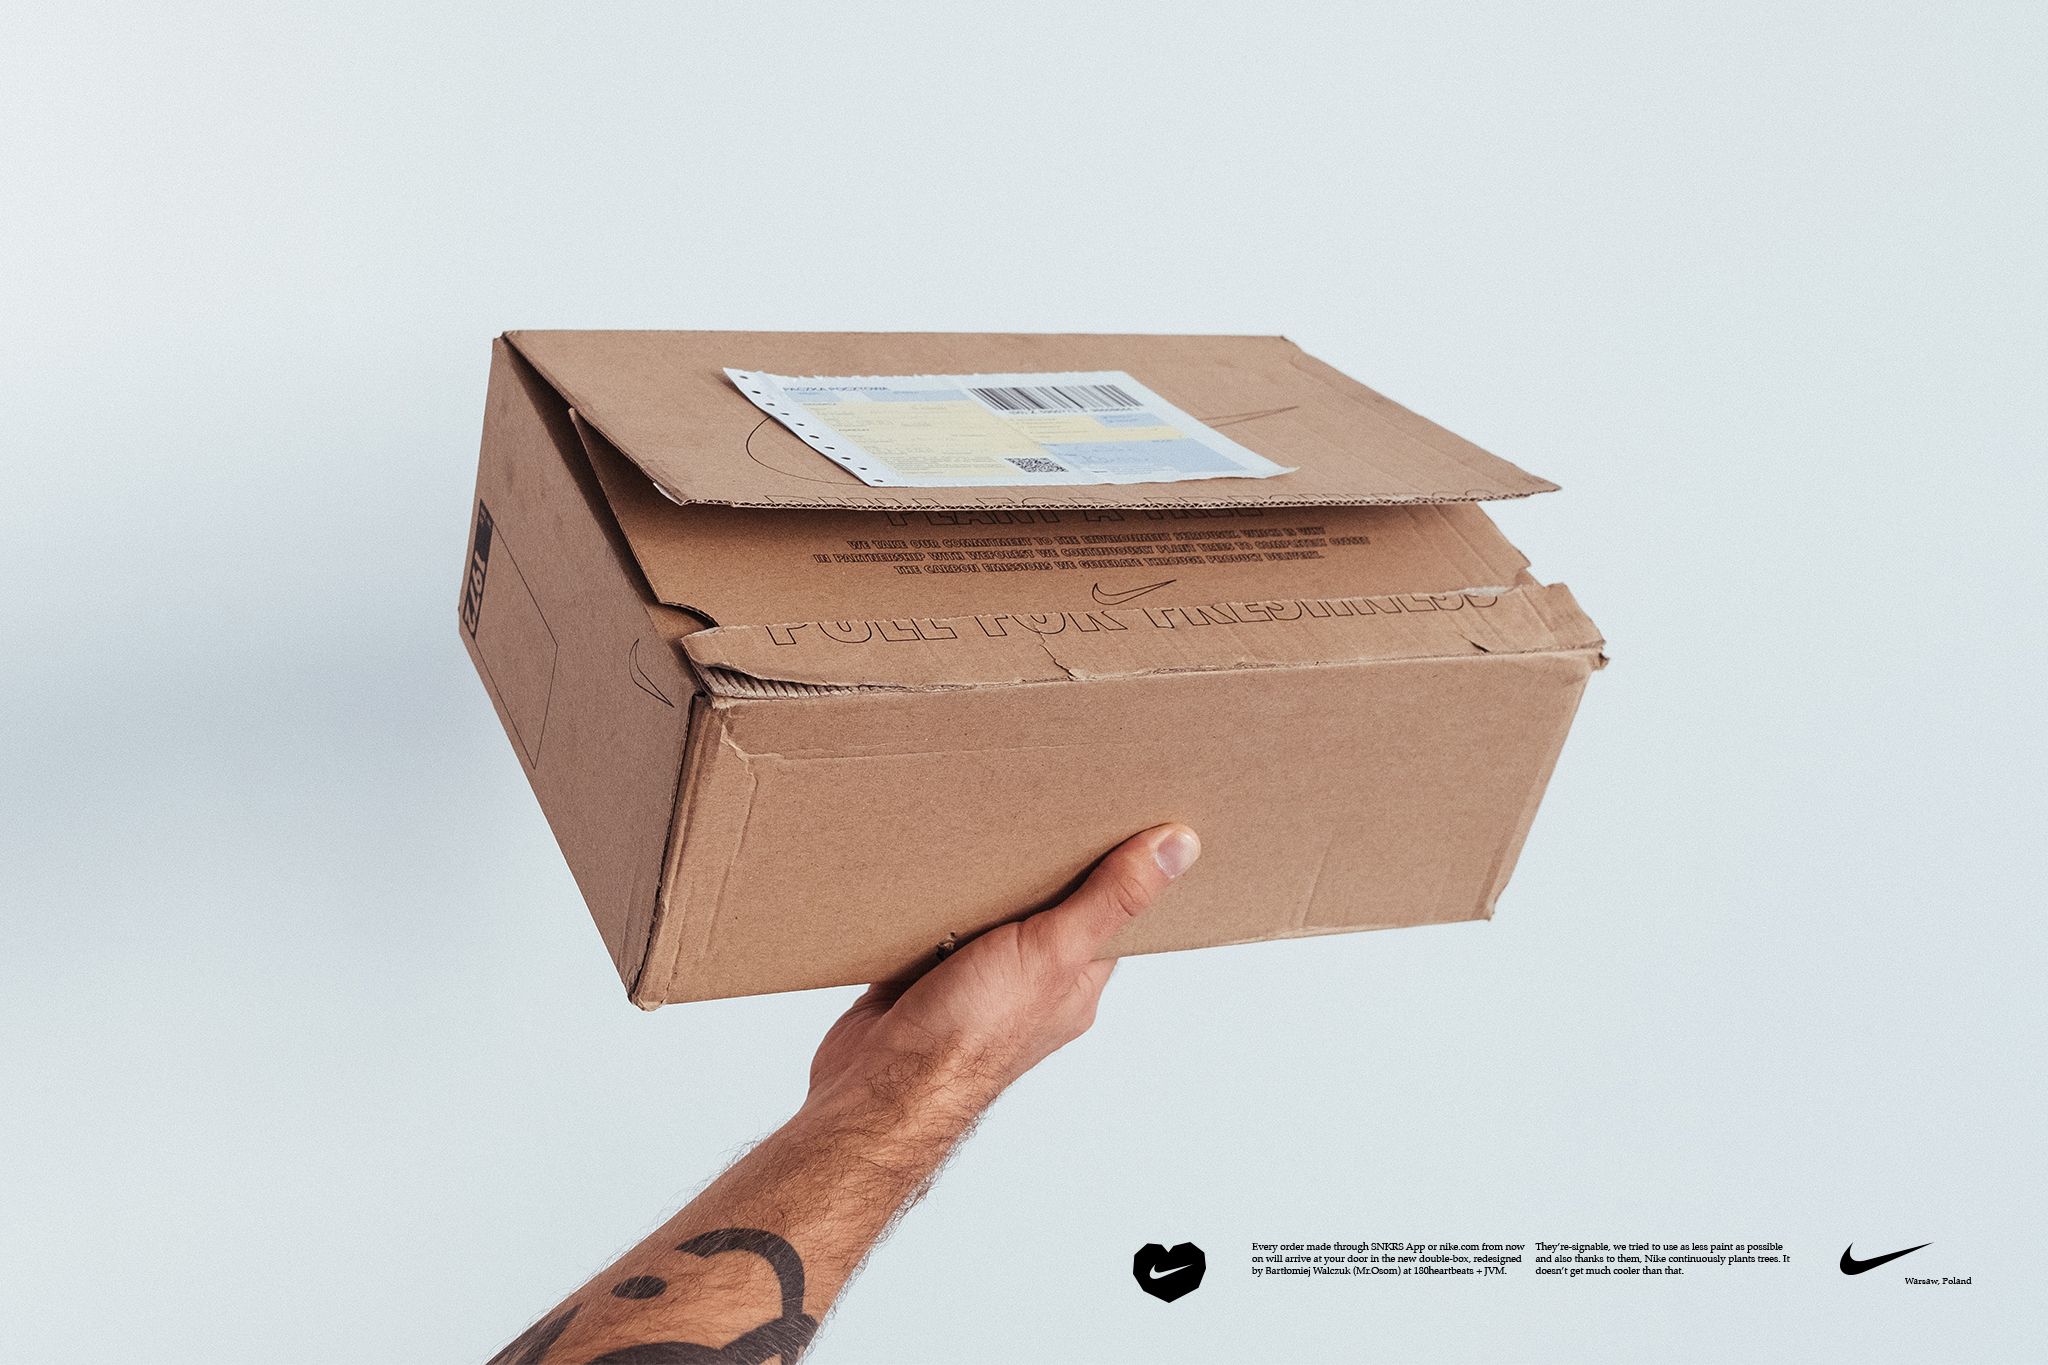 Polak zaprojektował pudełko, w który wysyłane są zamówienia z nike.com